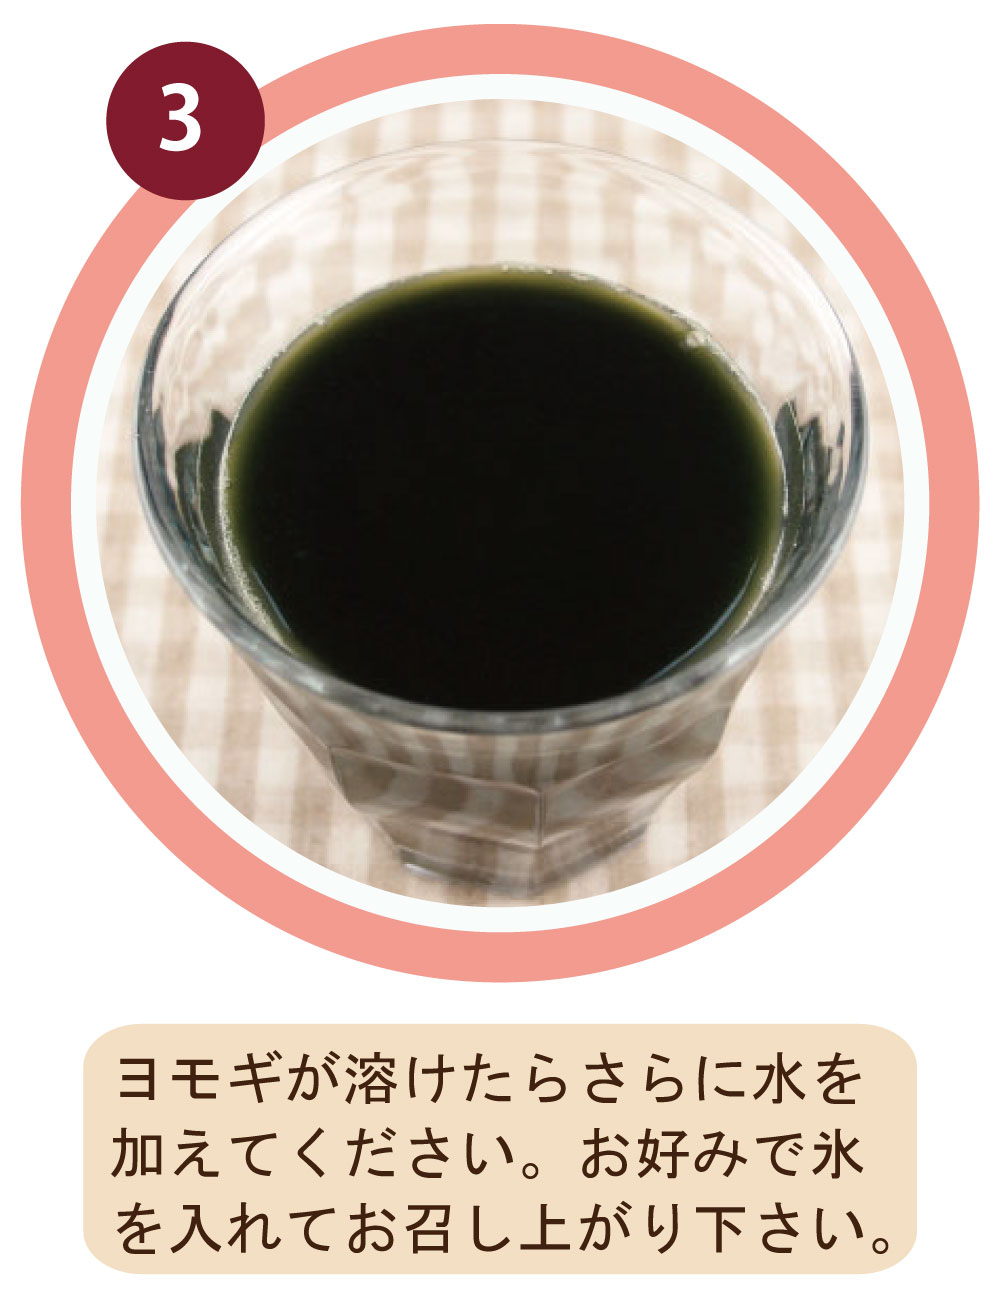 青森県産ヨモギパウダーの飲み方